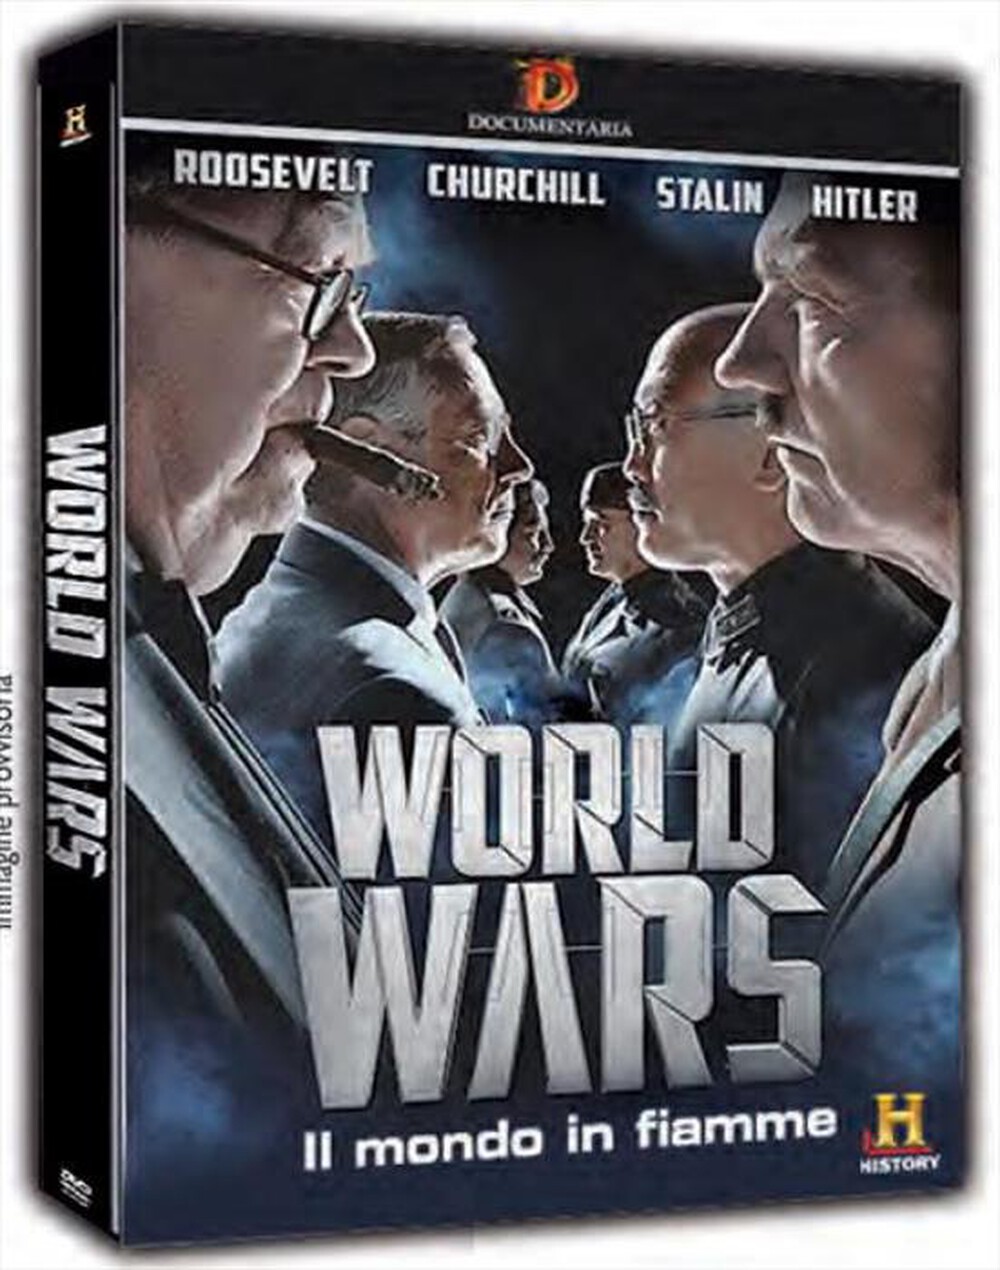 "HISTORY CHANNEL - World Wars - Il Mondo In Fiamme (3 Dvd)"